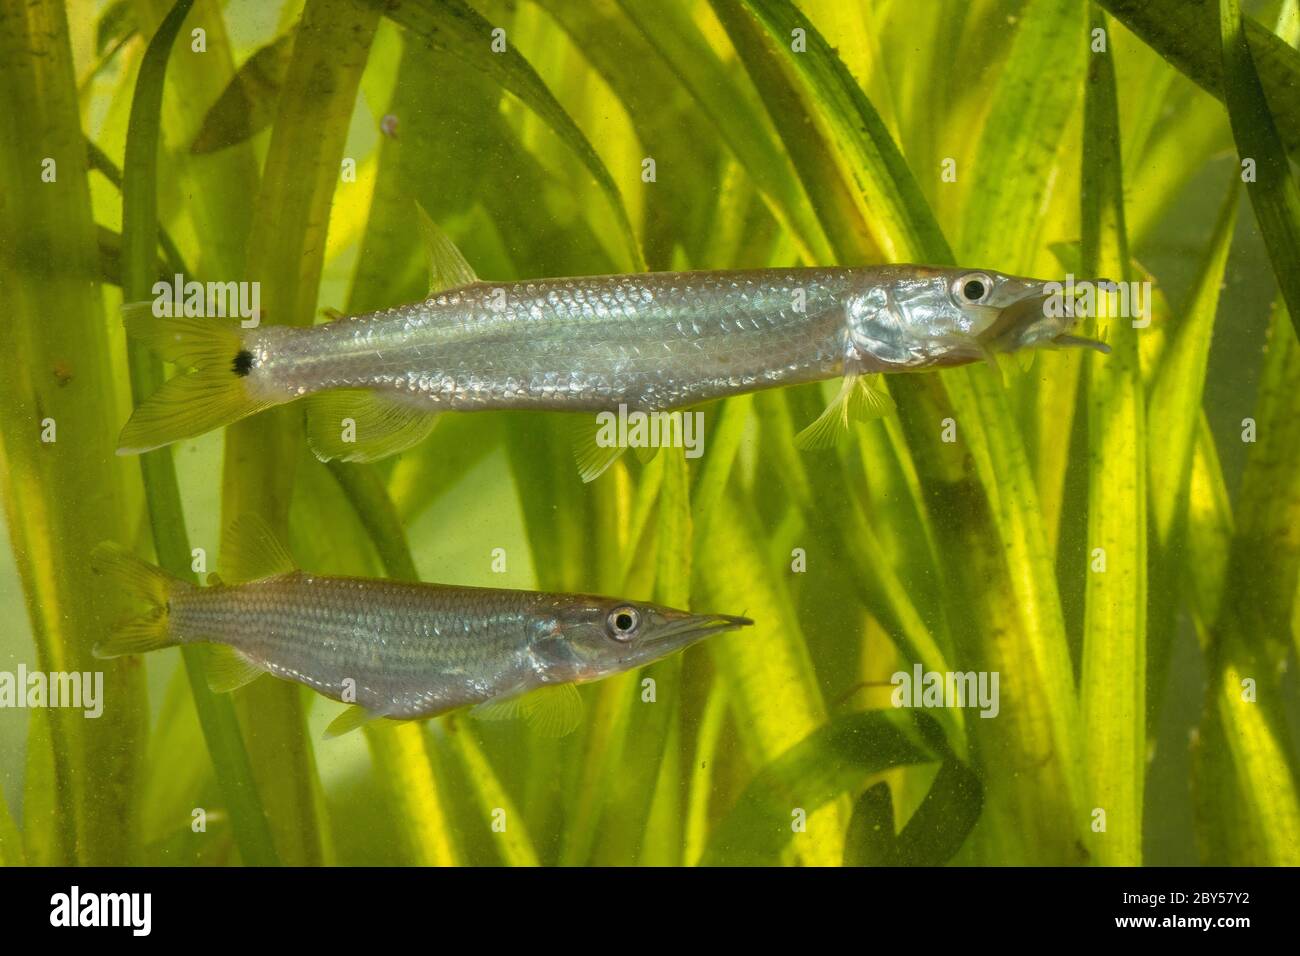 Los caracteres de lucio africano, los heptidos (Ctenolucius hujeta), alimentan a los peces pequeños capturados Foto de stock